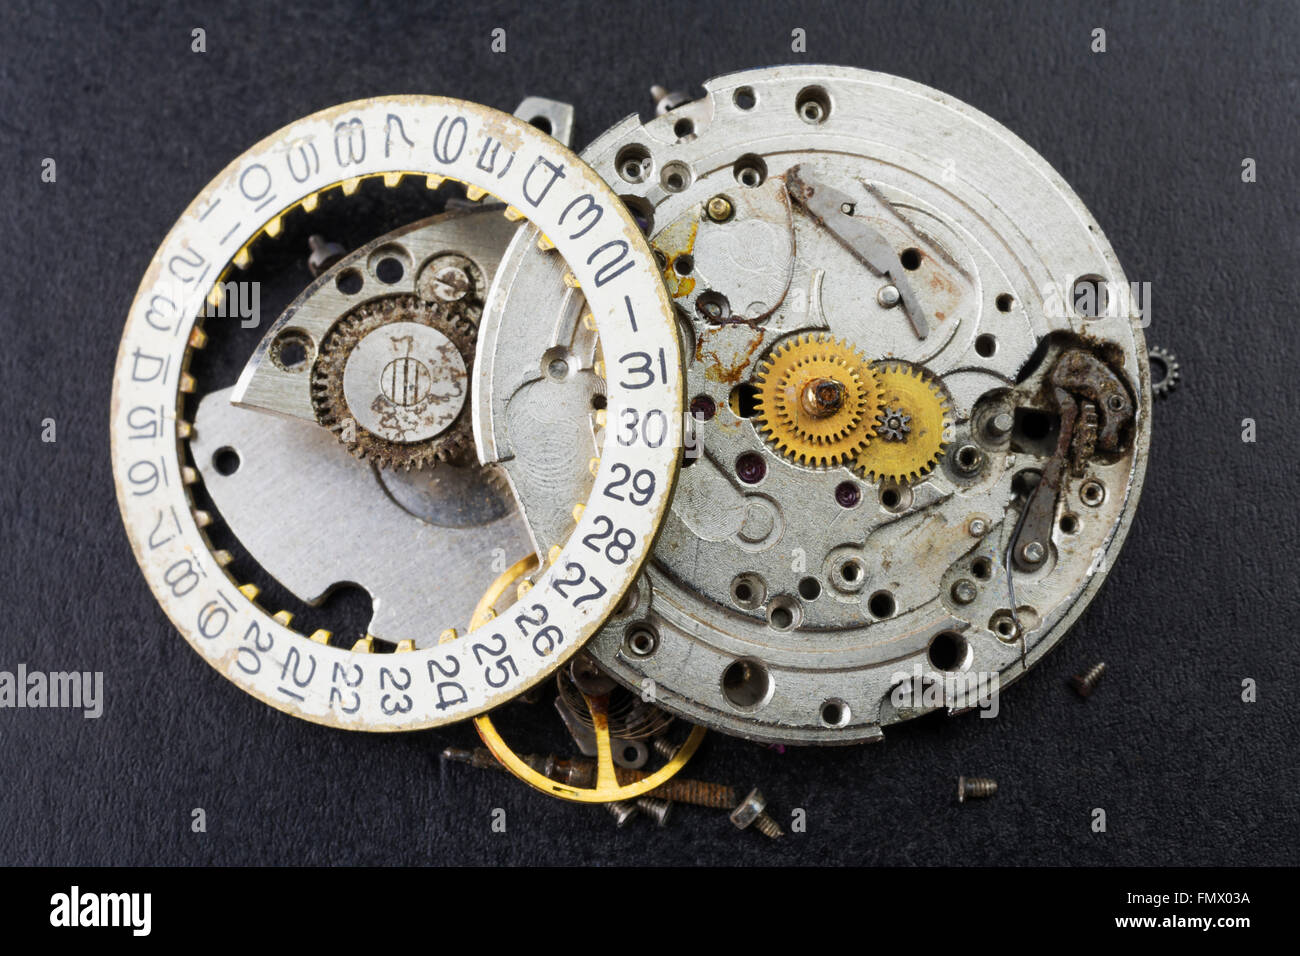 El reloj de pulsera viejo y roto desarmó los movimientos Foto de stock